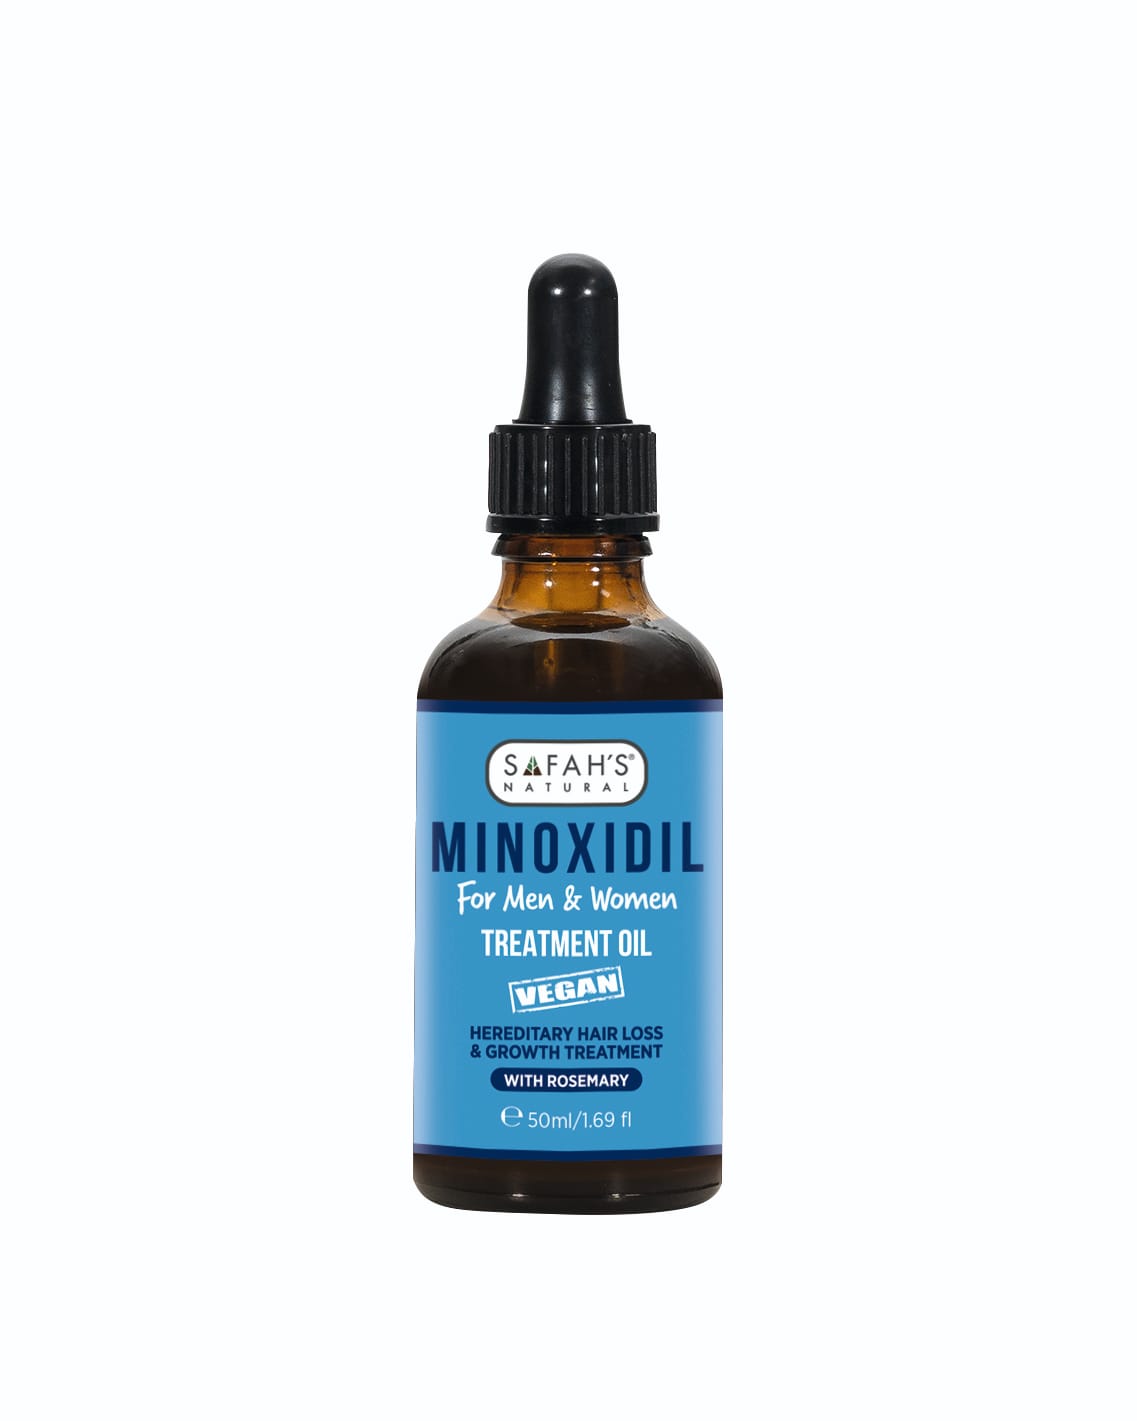 Minoxidil hair growth oil - Promotes Stronger, Fuller Hair Growth